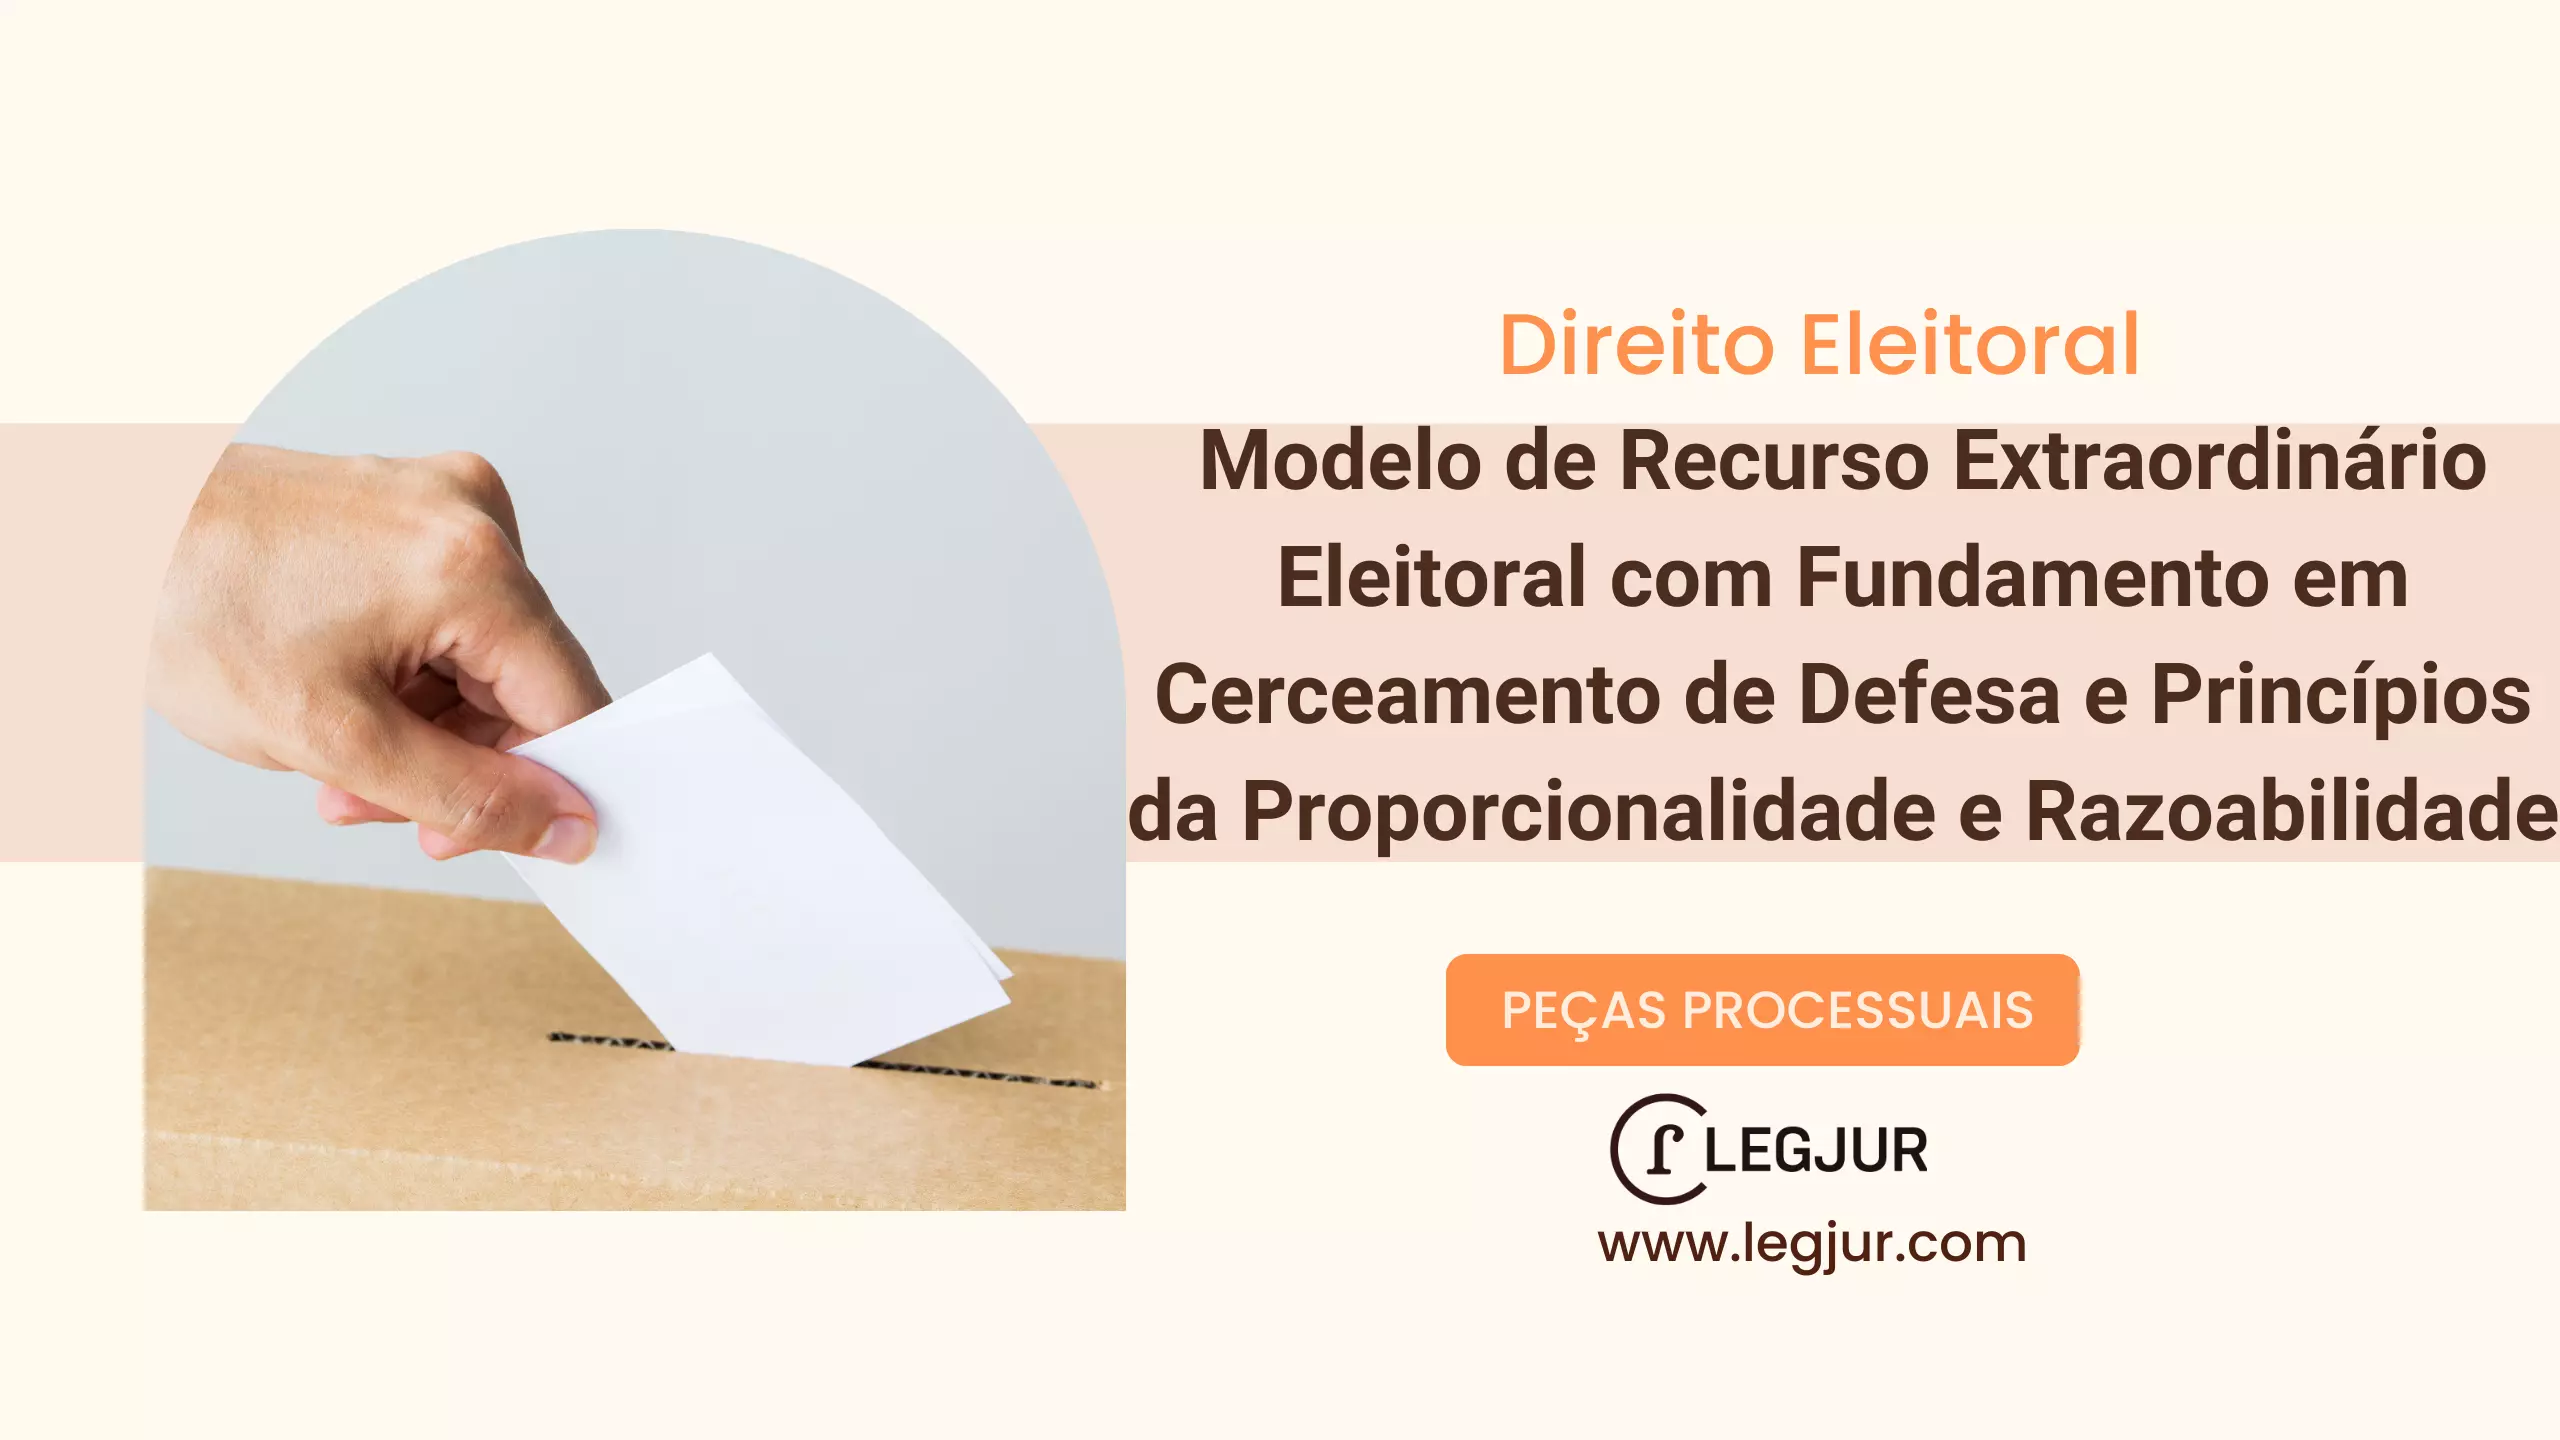 Modelo de Recurso Extraordinário Eleitoral com Fundamento em Cerceamento de Defesa e Princípios da Proporcionalidade e Razoabilidade